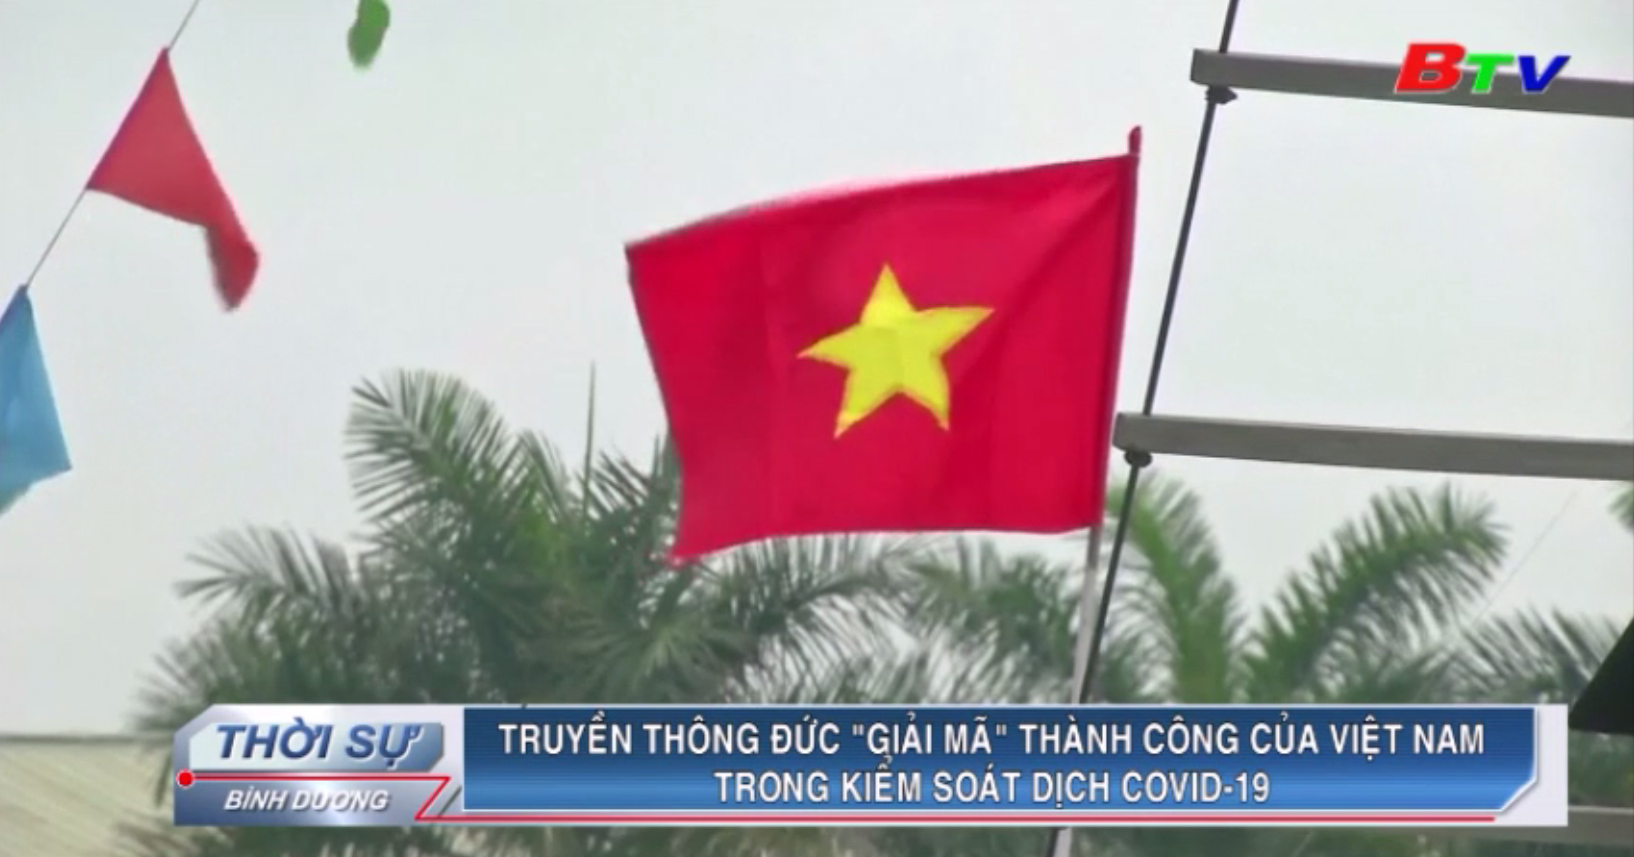 Truyền thông Đức “giải mã” thành công của Việt Nam trong kiểm soát dịch Covid-19